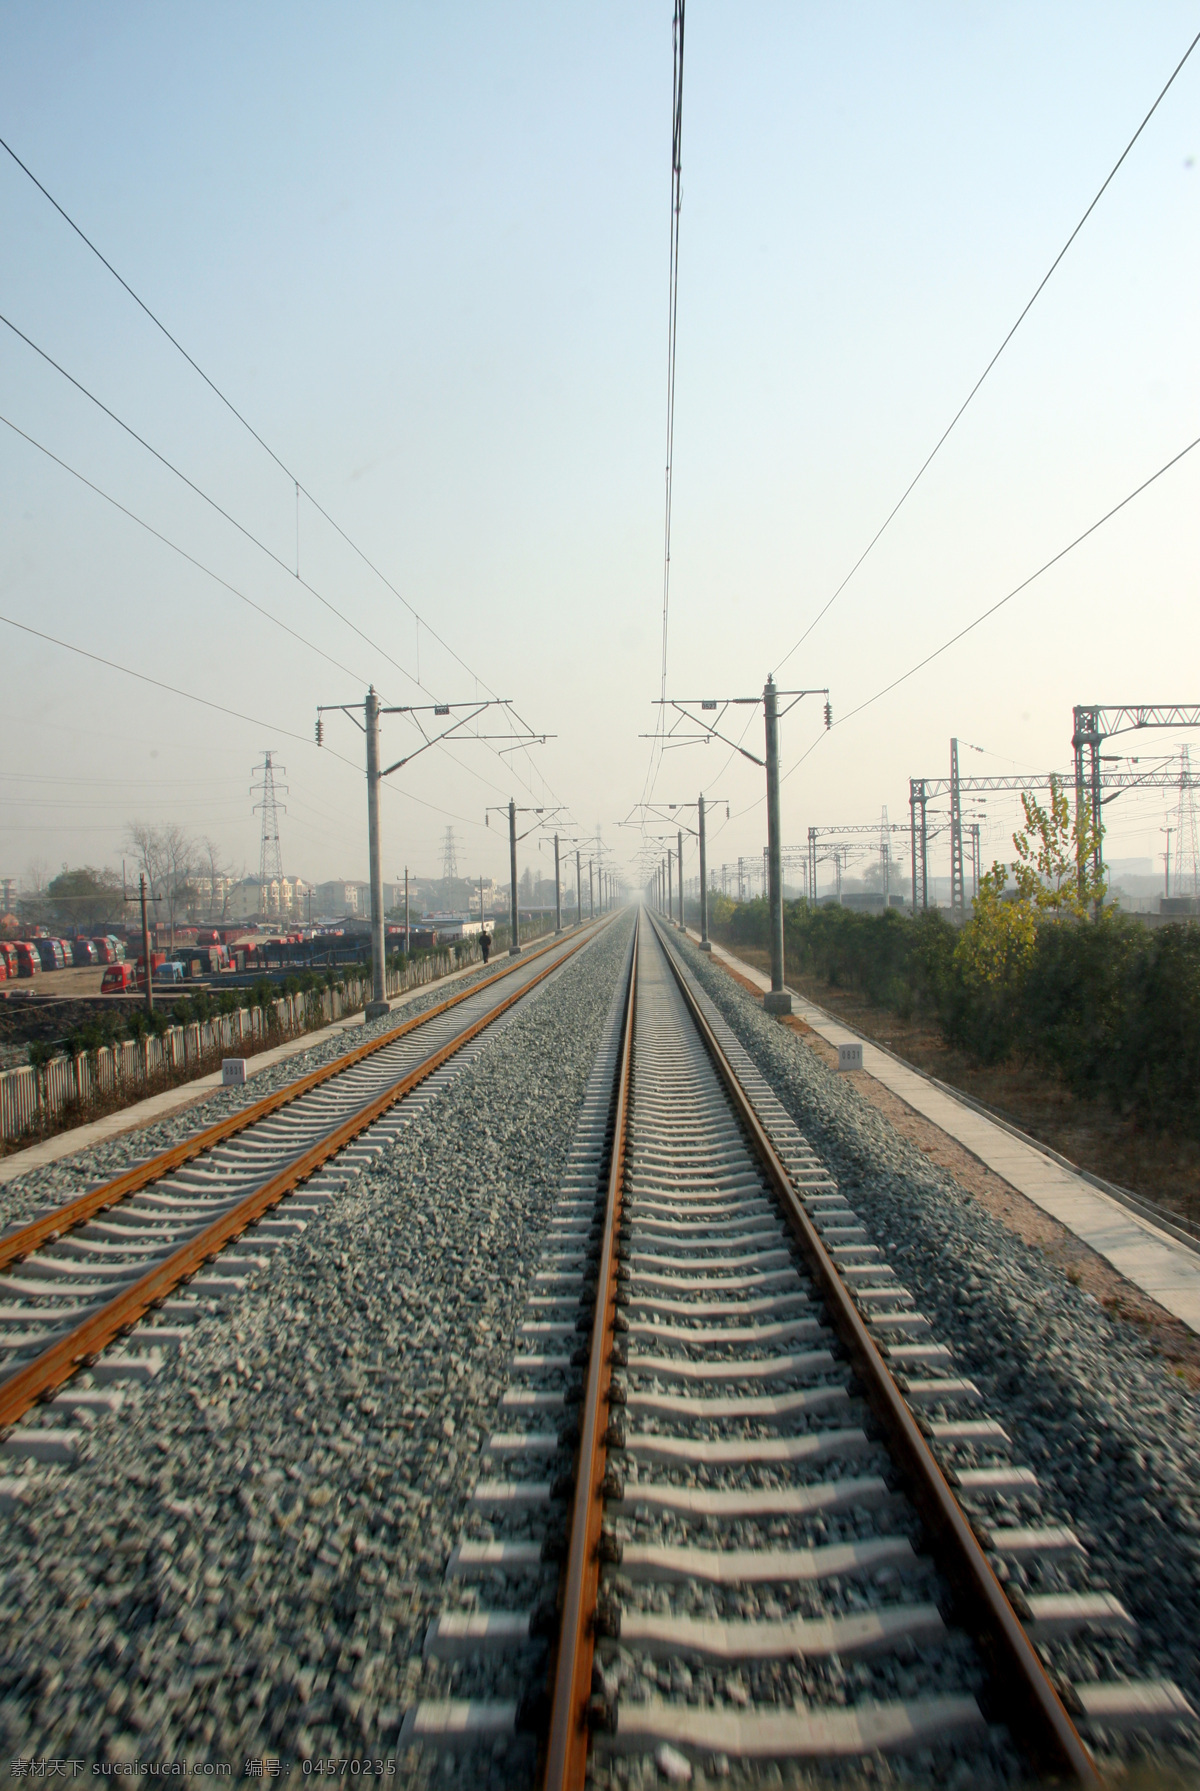 工业生产 铁路 工业科技 现代科技 轨道